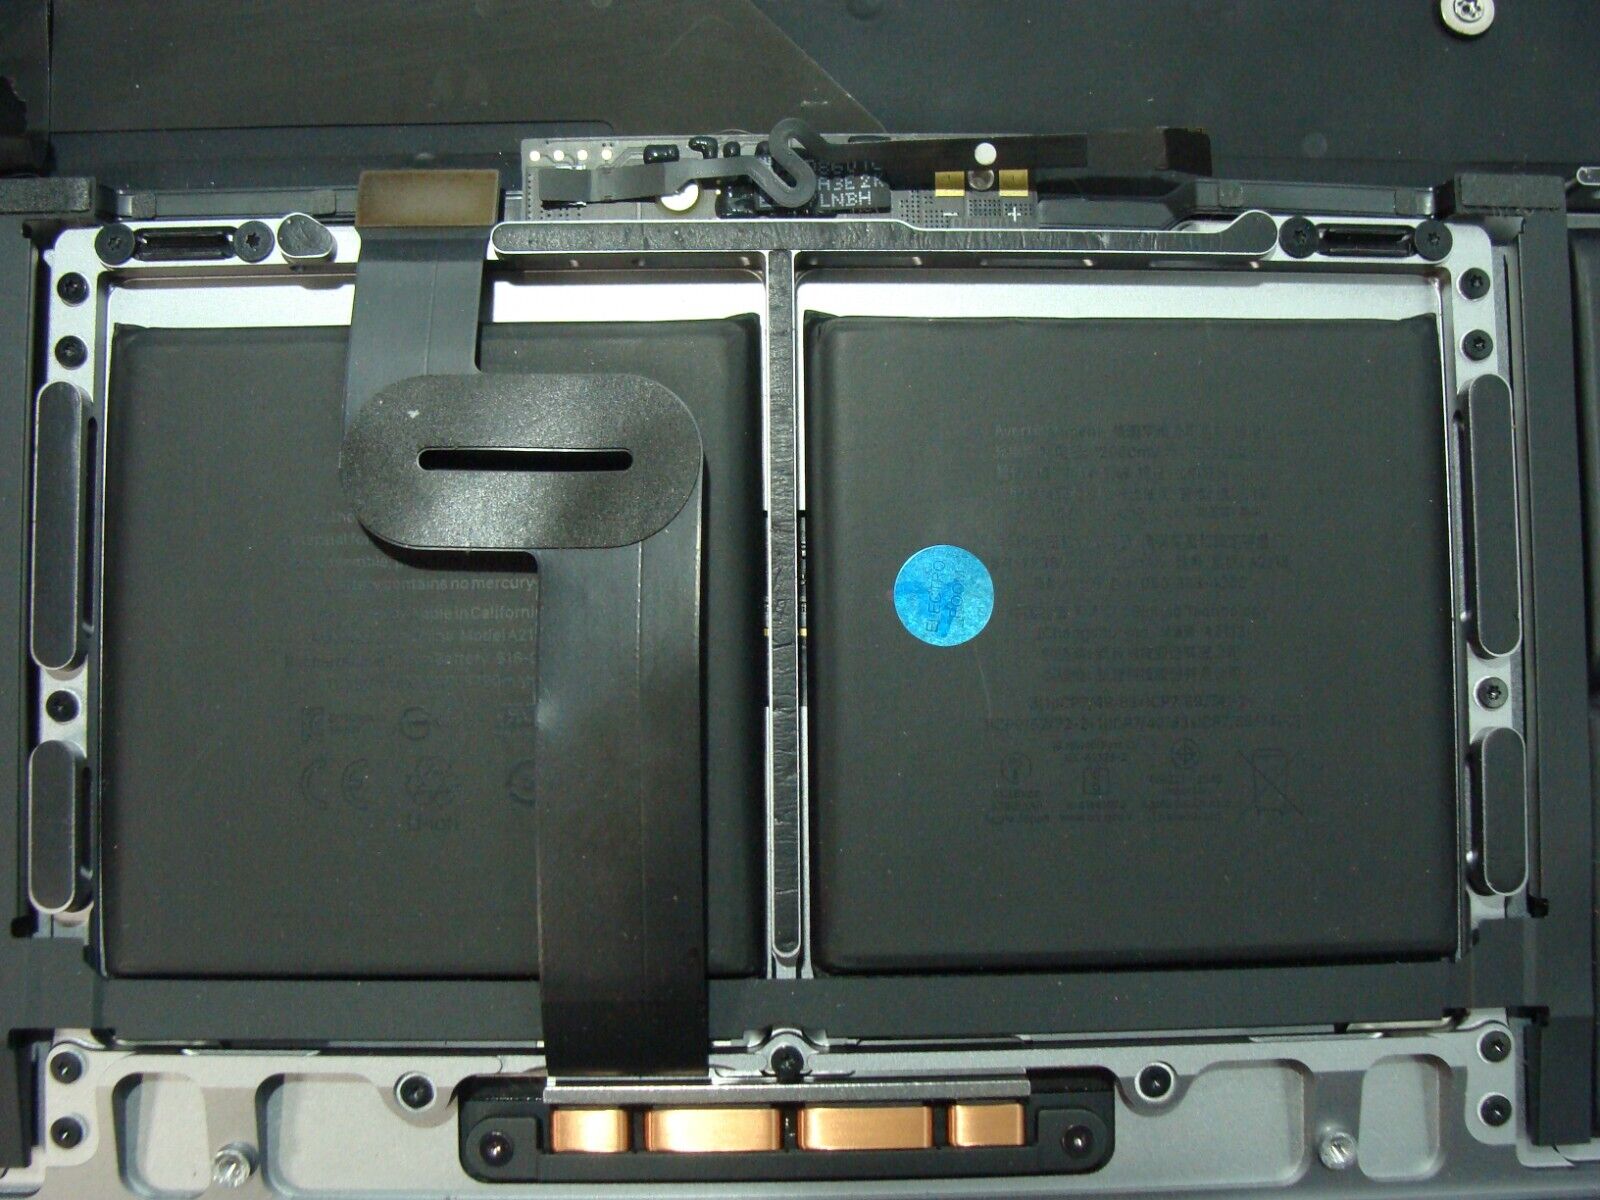 MacBook Pro 16